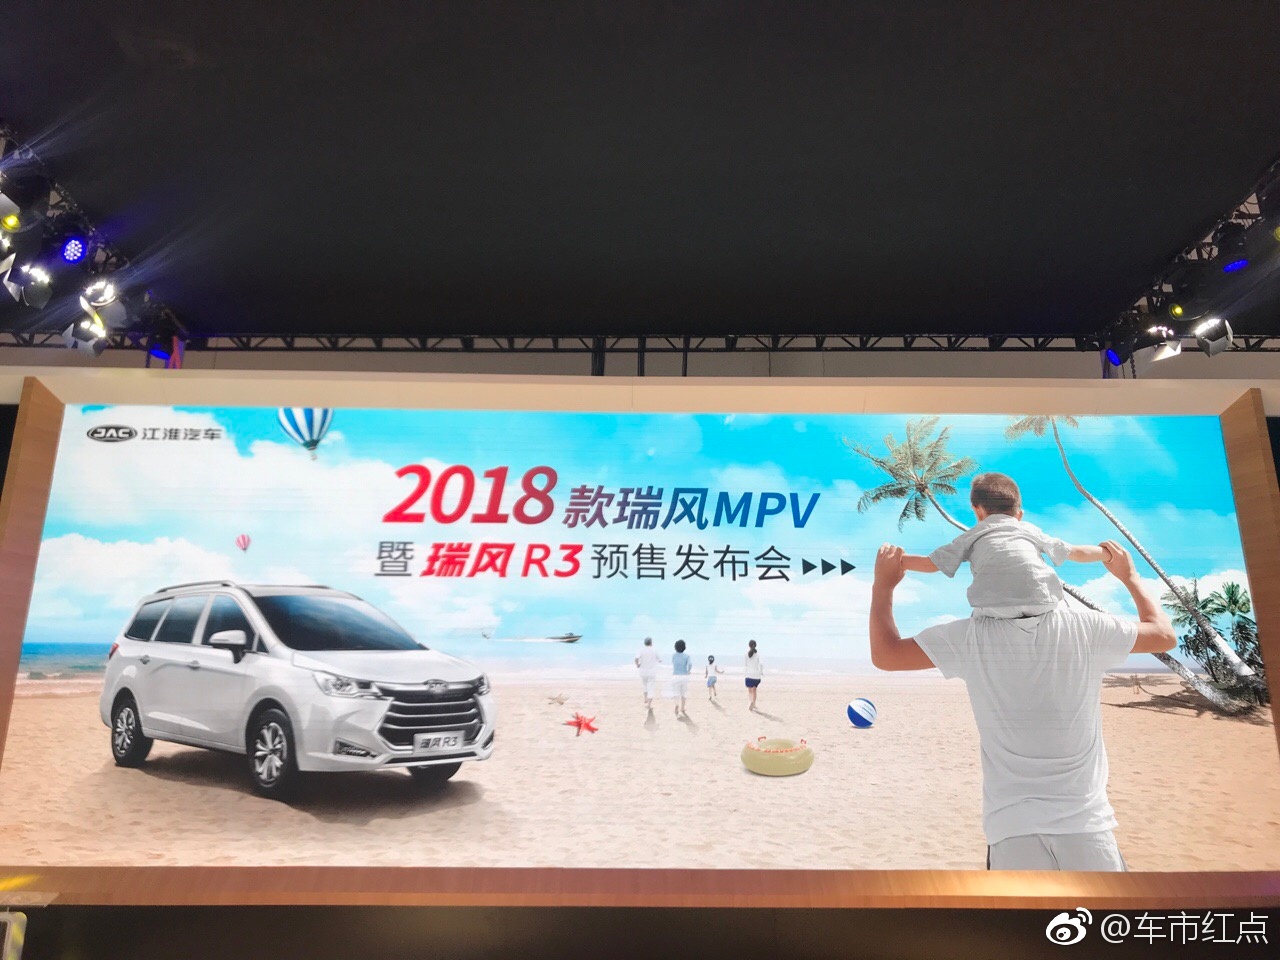 2018款瑞风MPV暨瑞风R3预售发布会在海南国际汽车展览会举行！